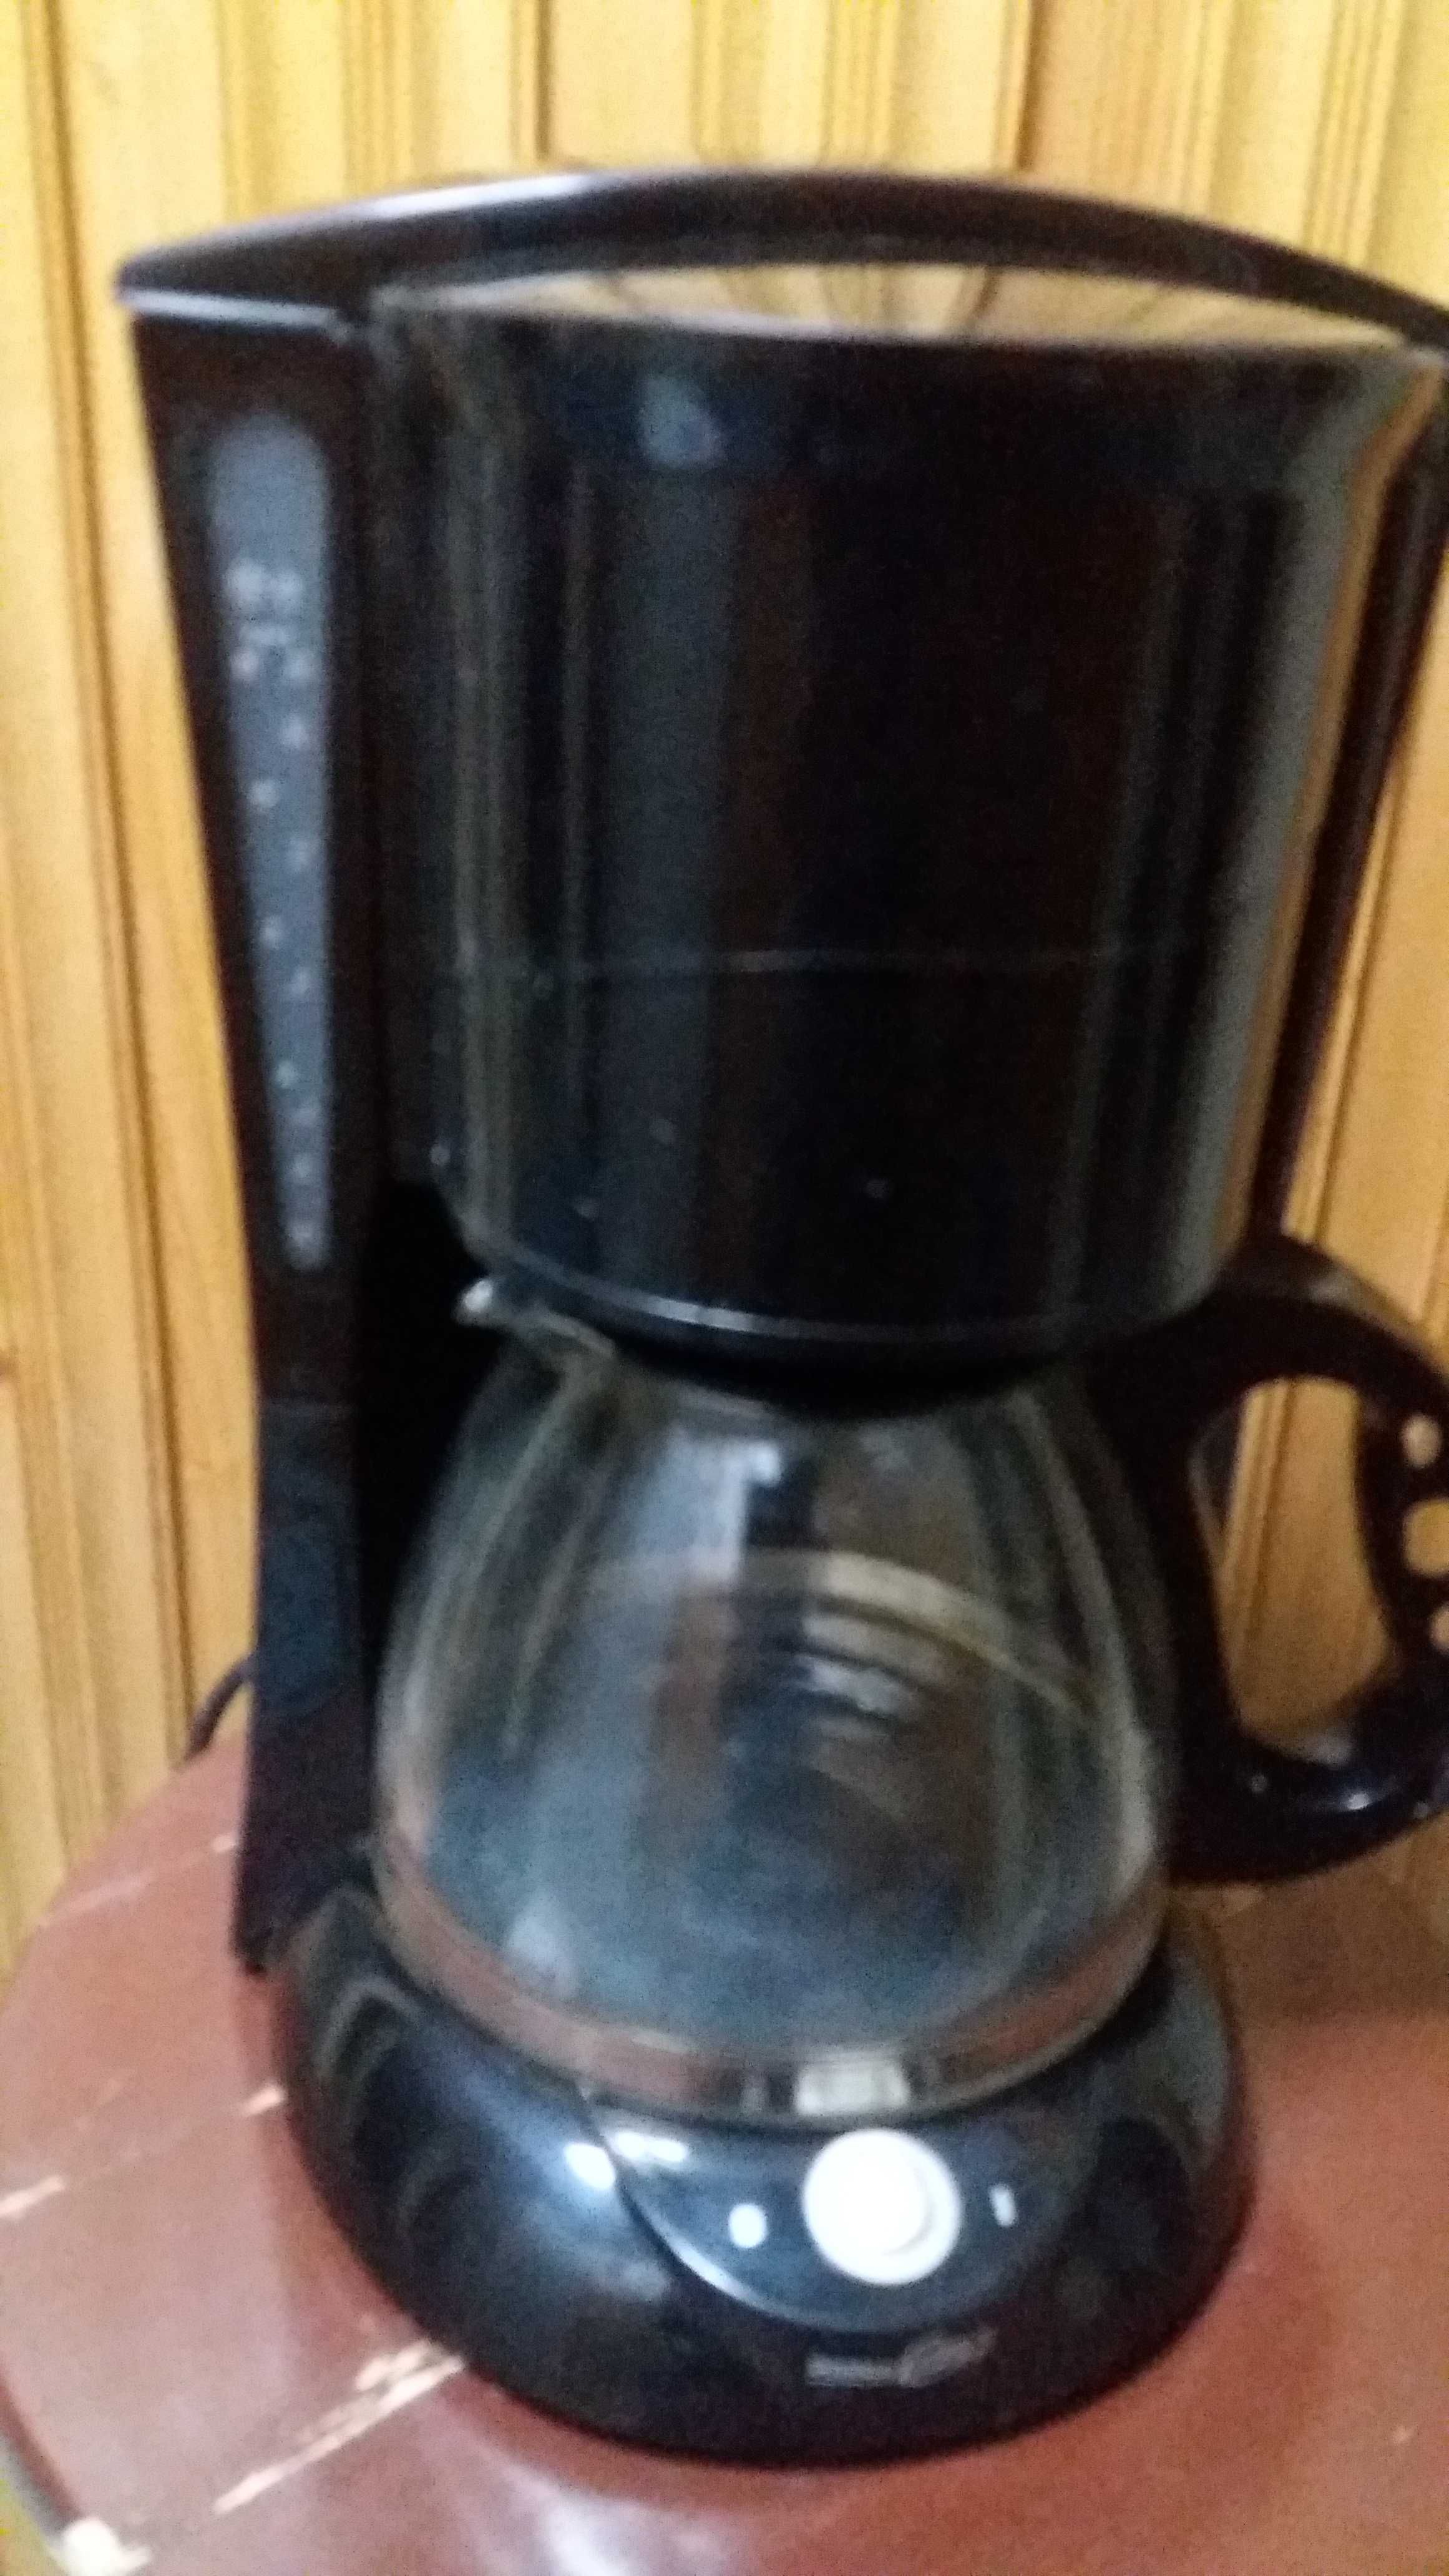 vand filtru de cafea